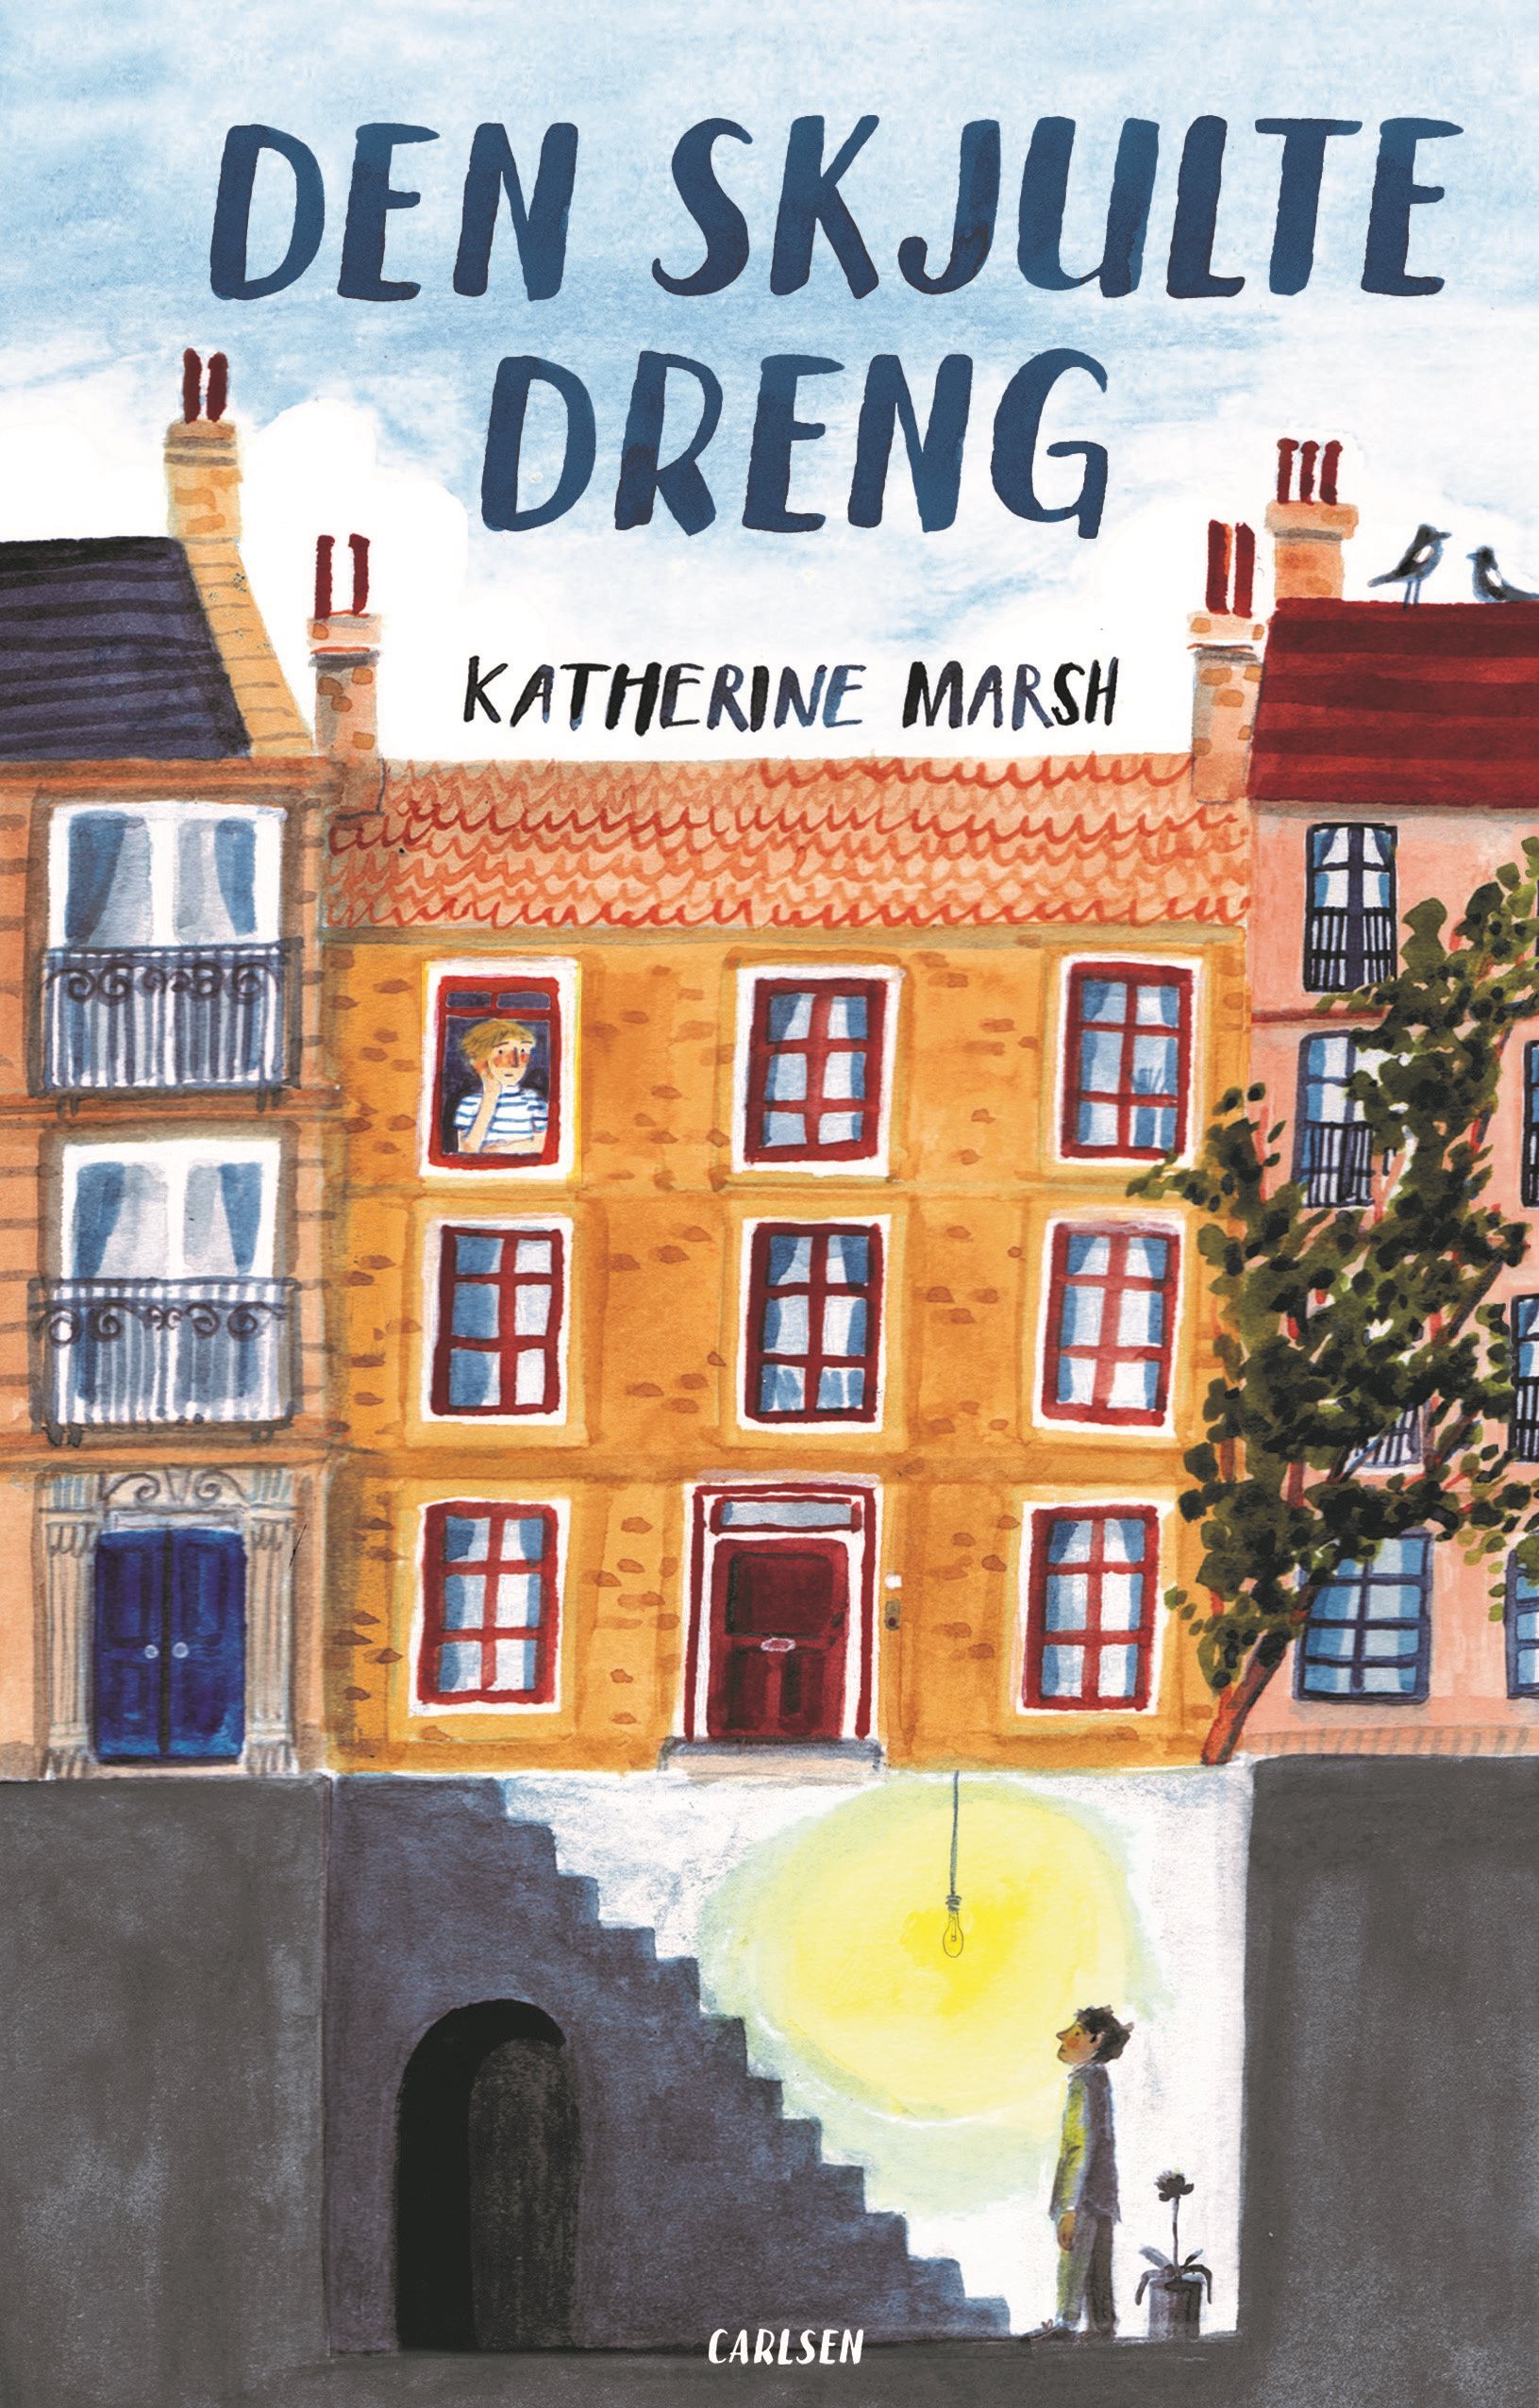 Den skjulte dreng, Katherine Marsh, børnebog, børnebøger